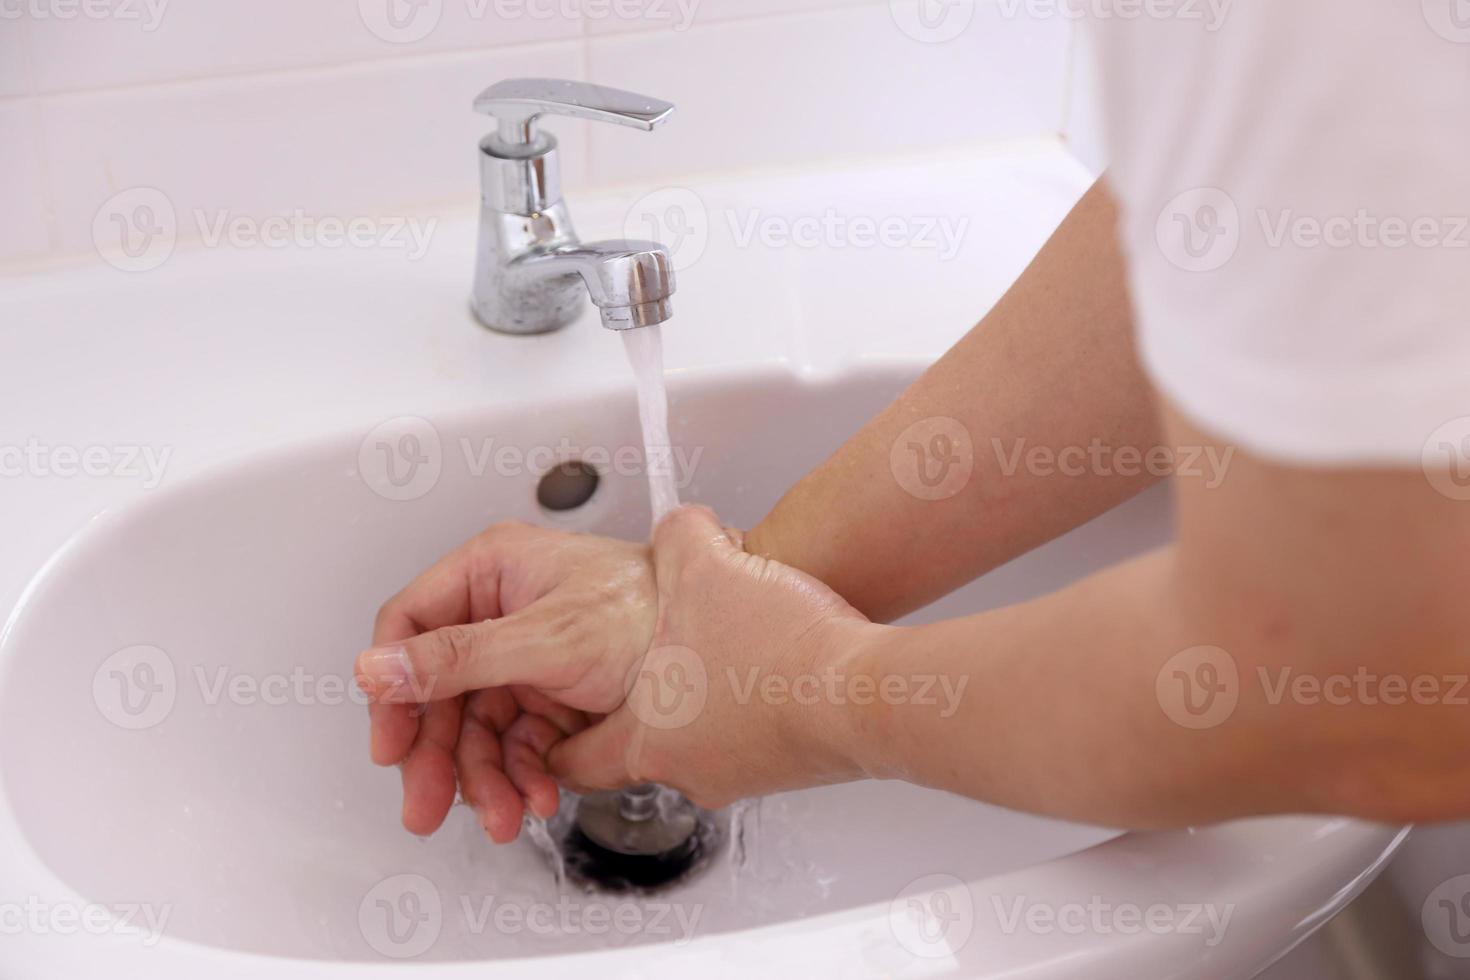 friska händer tvättar foto